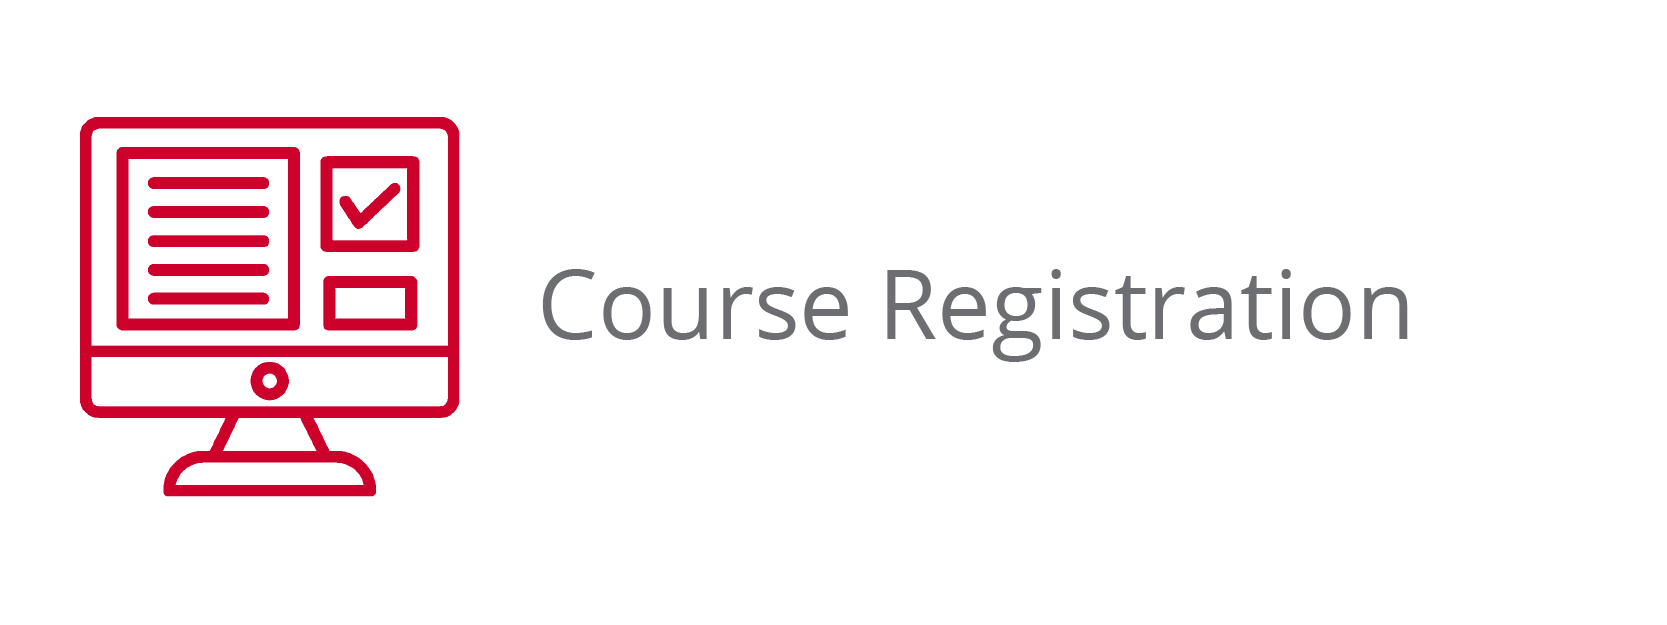 Course Registration Button